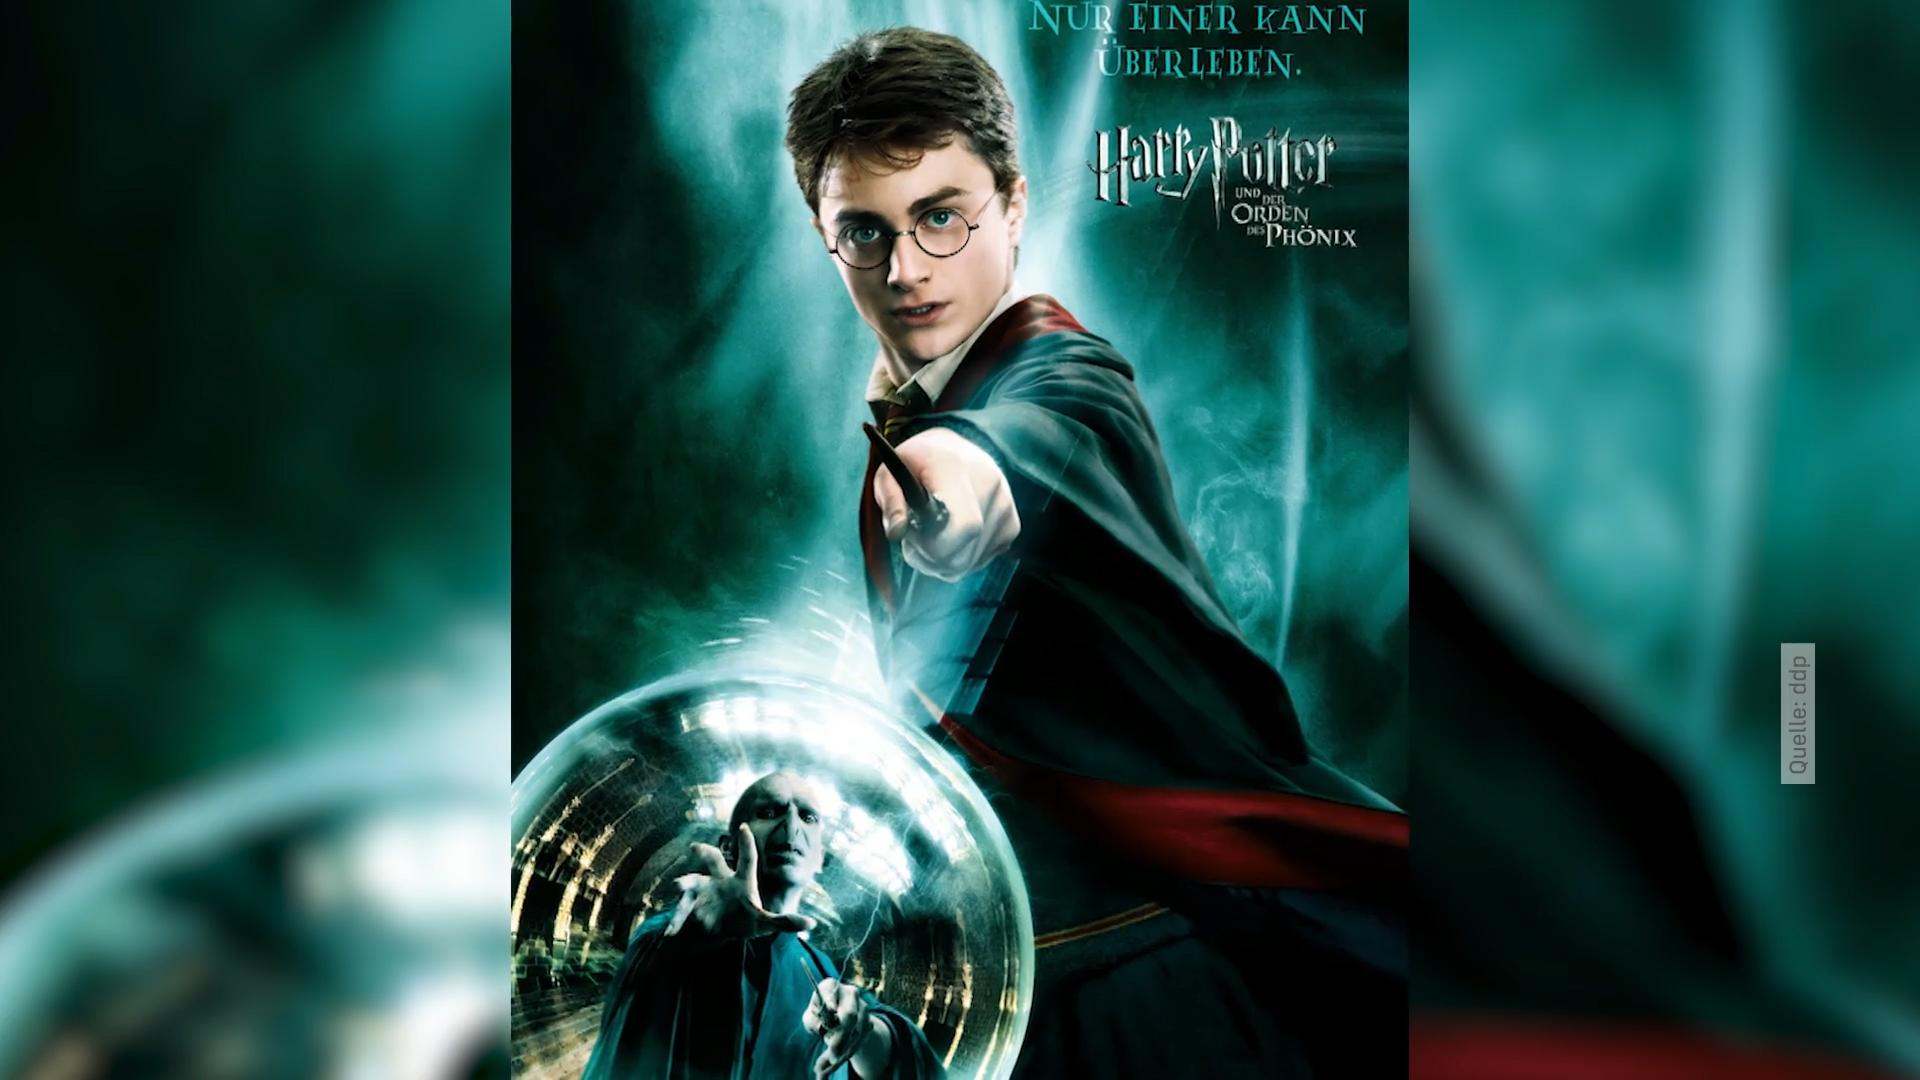 Film-Requisiten wie Brille & Zauberstab werden versteigert "Harry Potter"-Fans hergehört